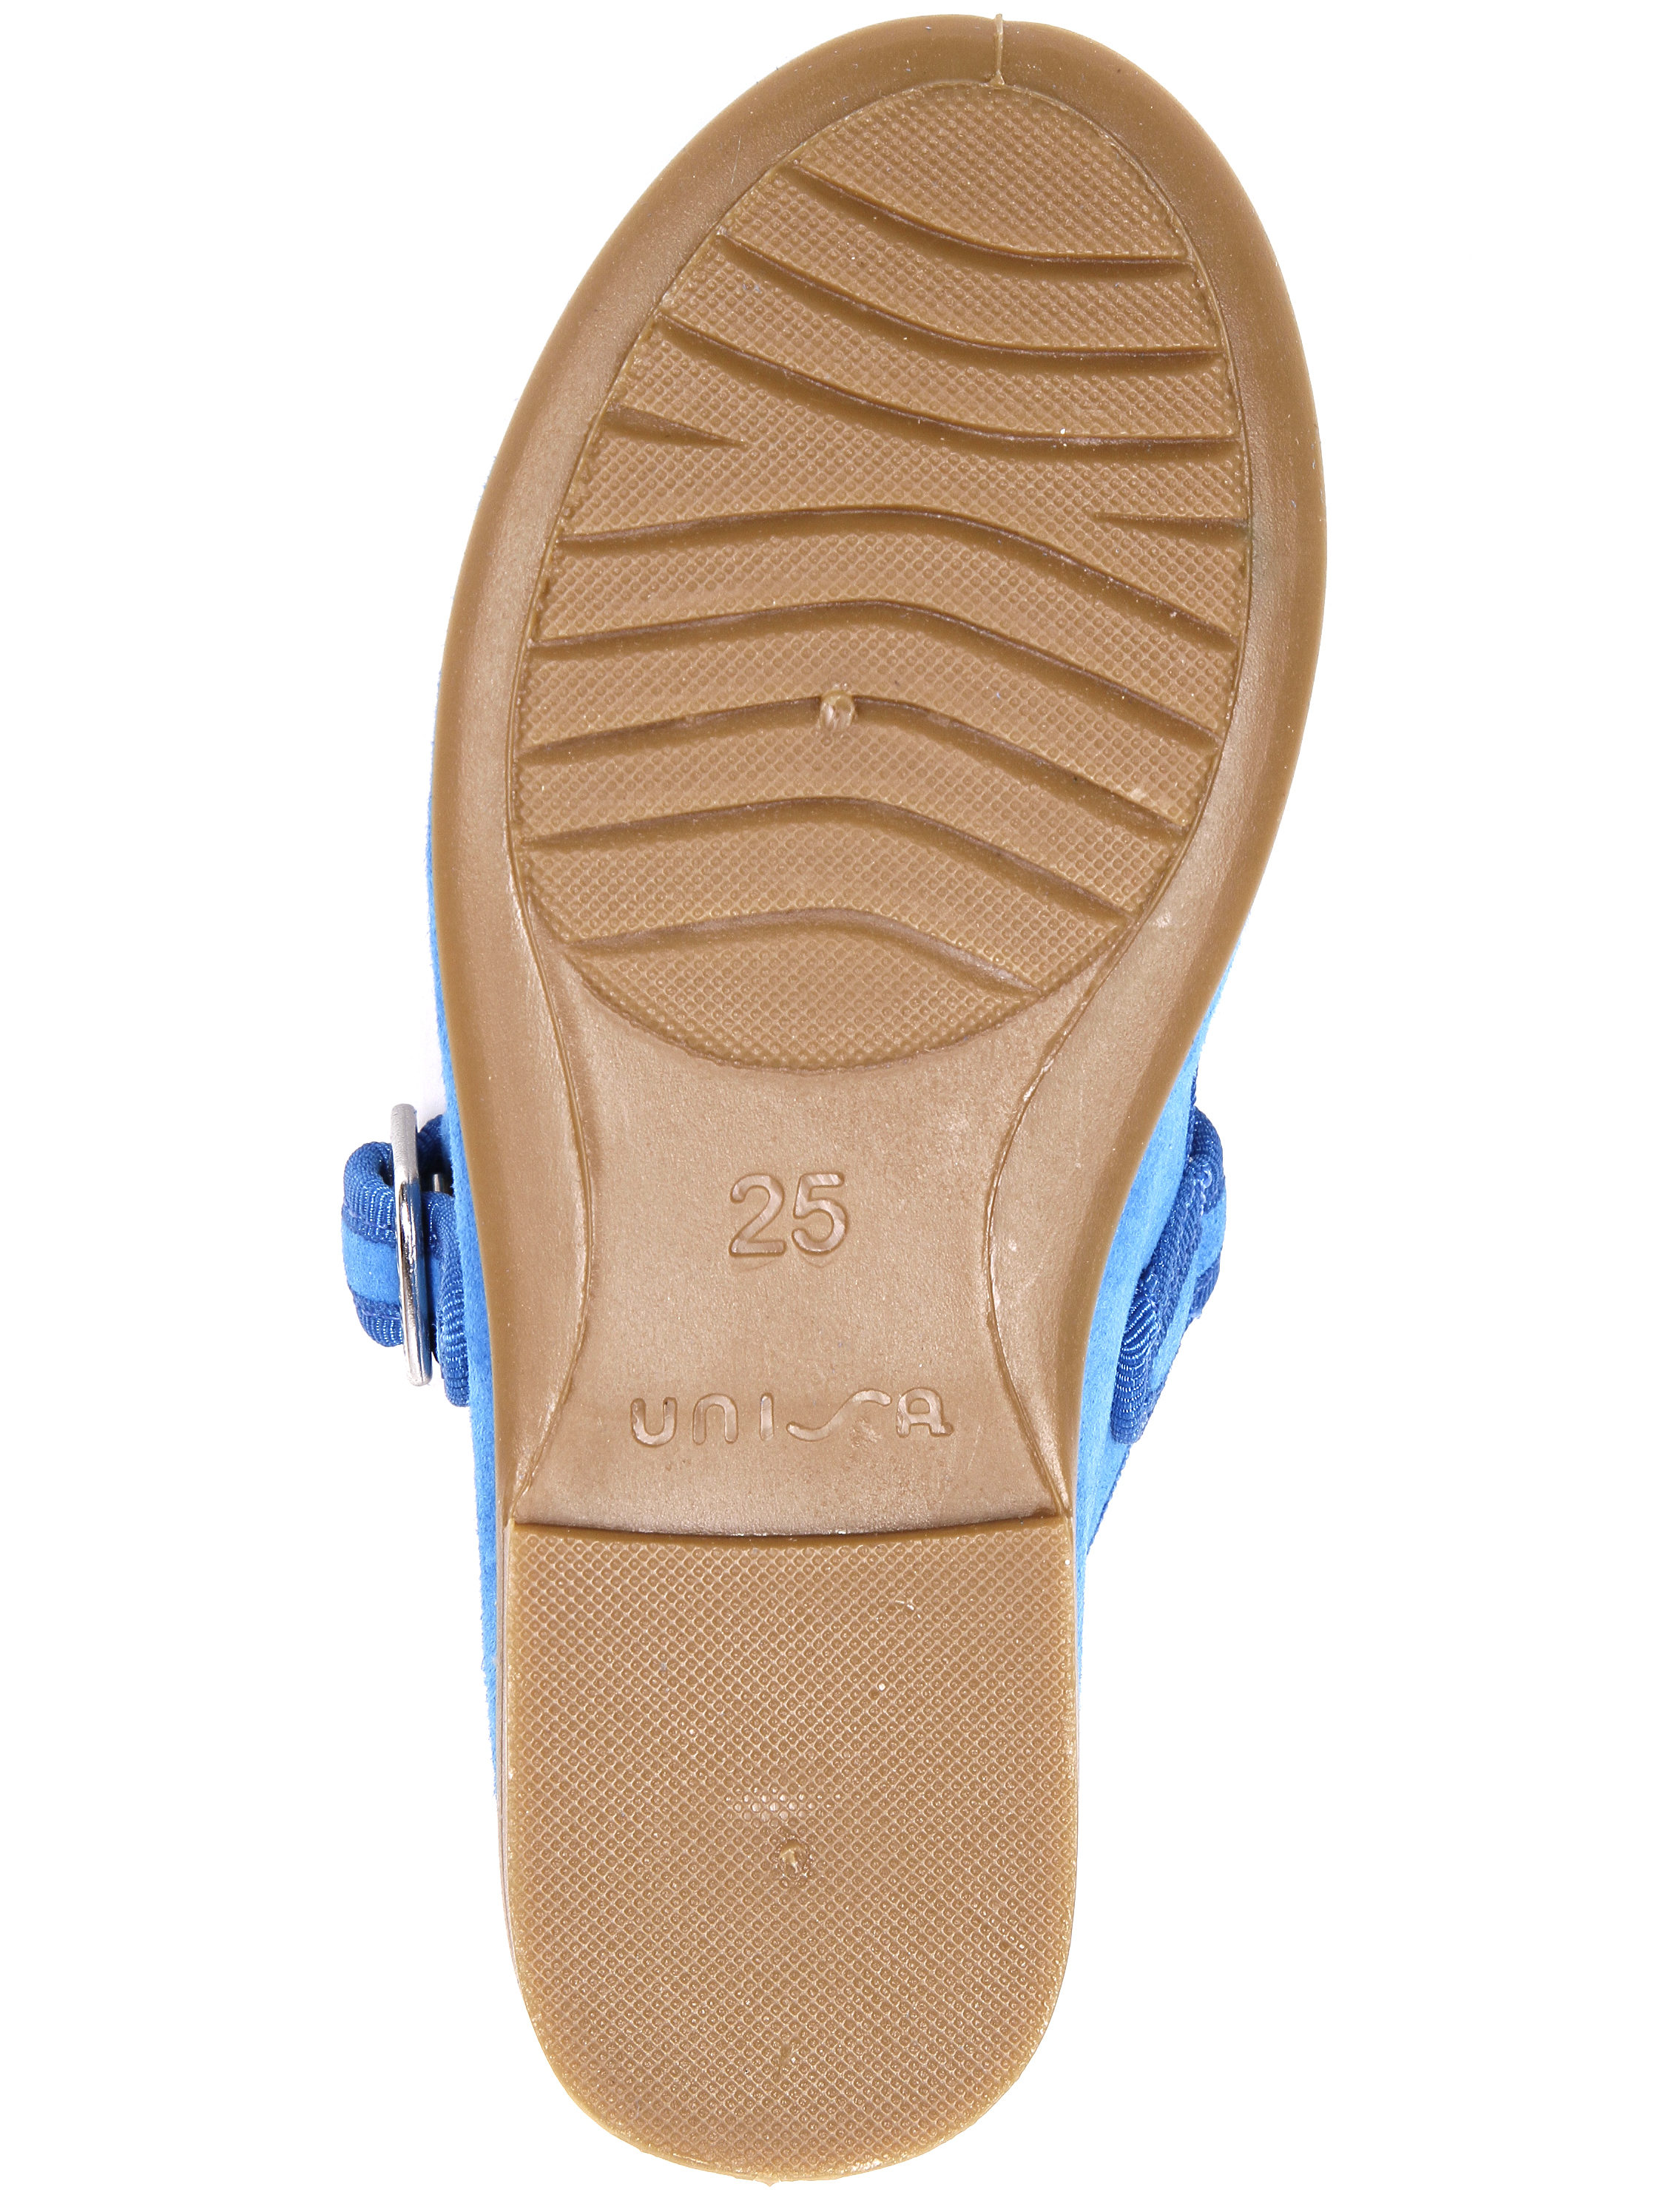 Туфли UNISA 1952860, цвет голубой, размер 35 2011509970013 - фото 6